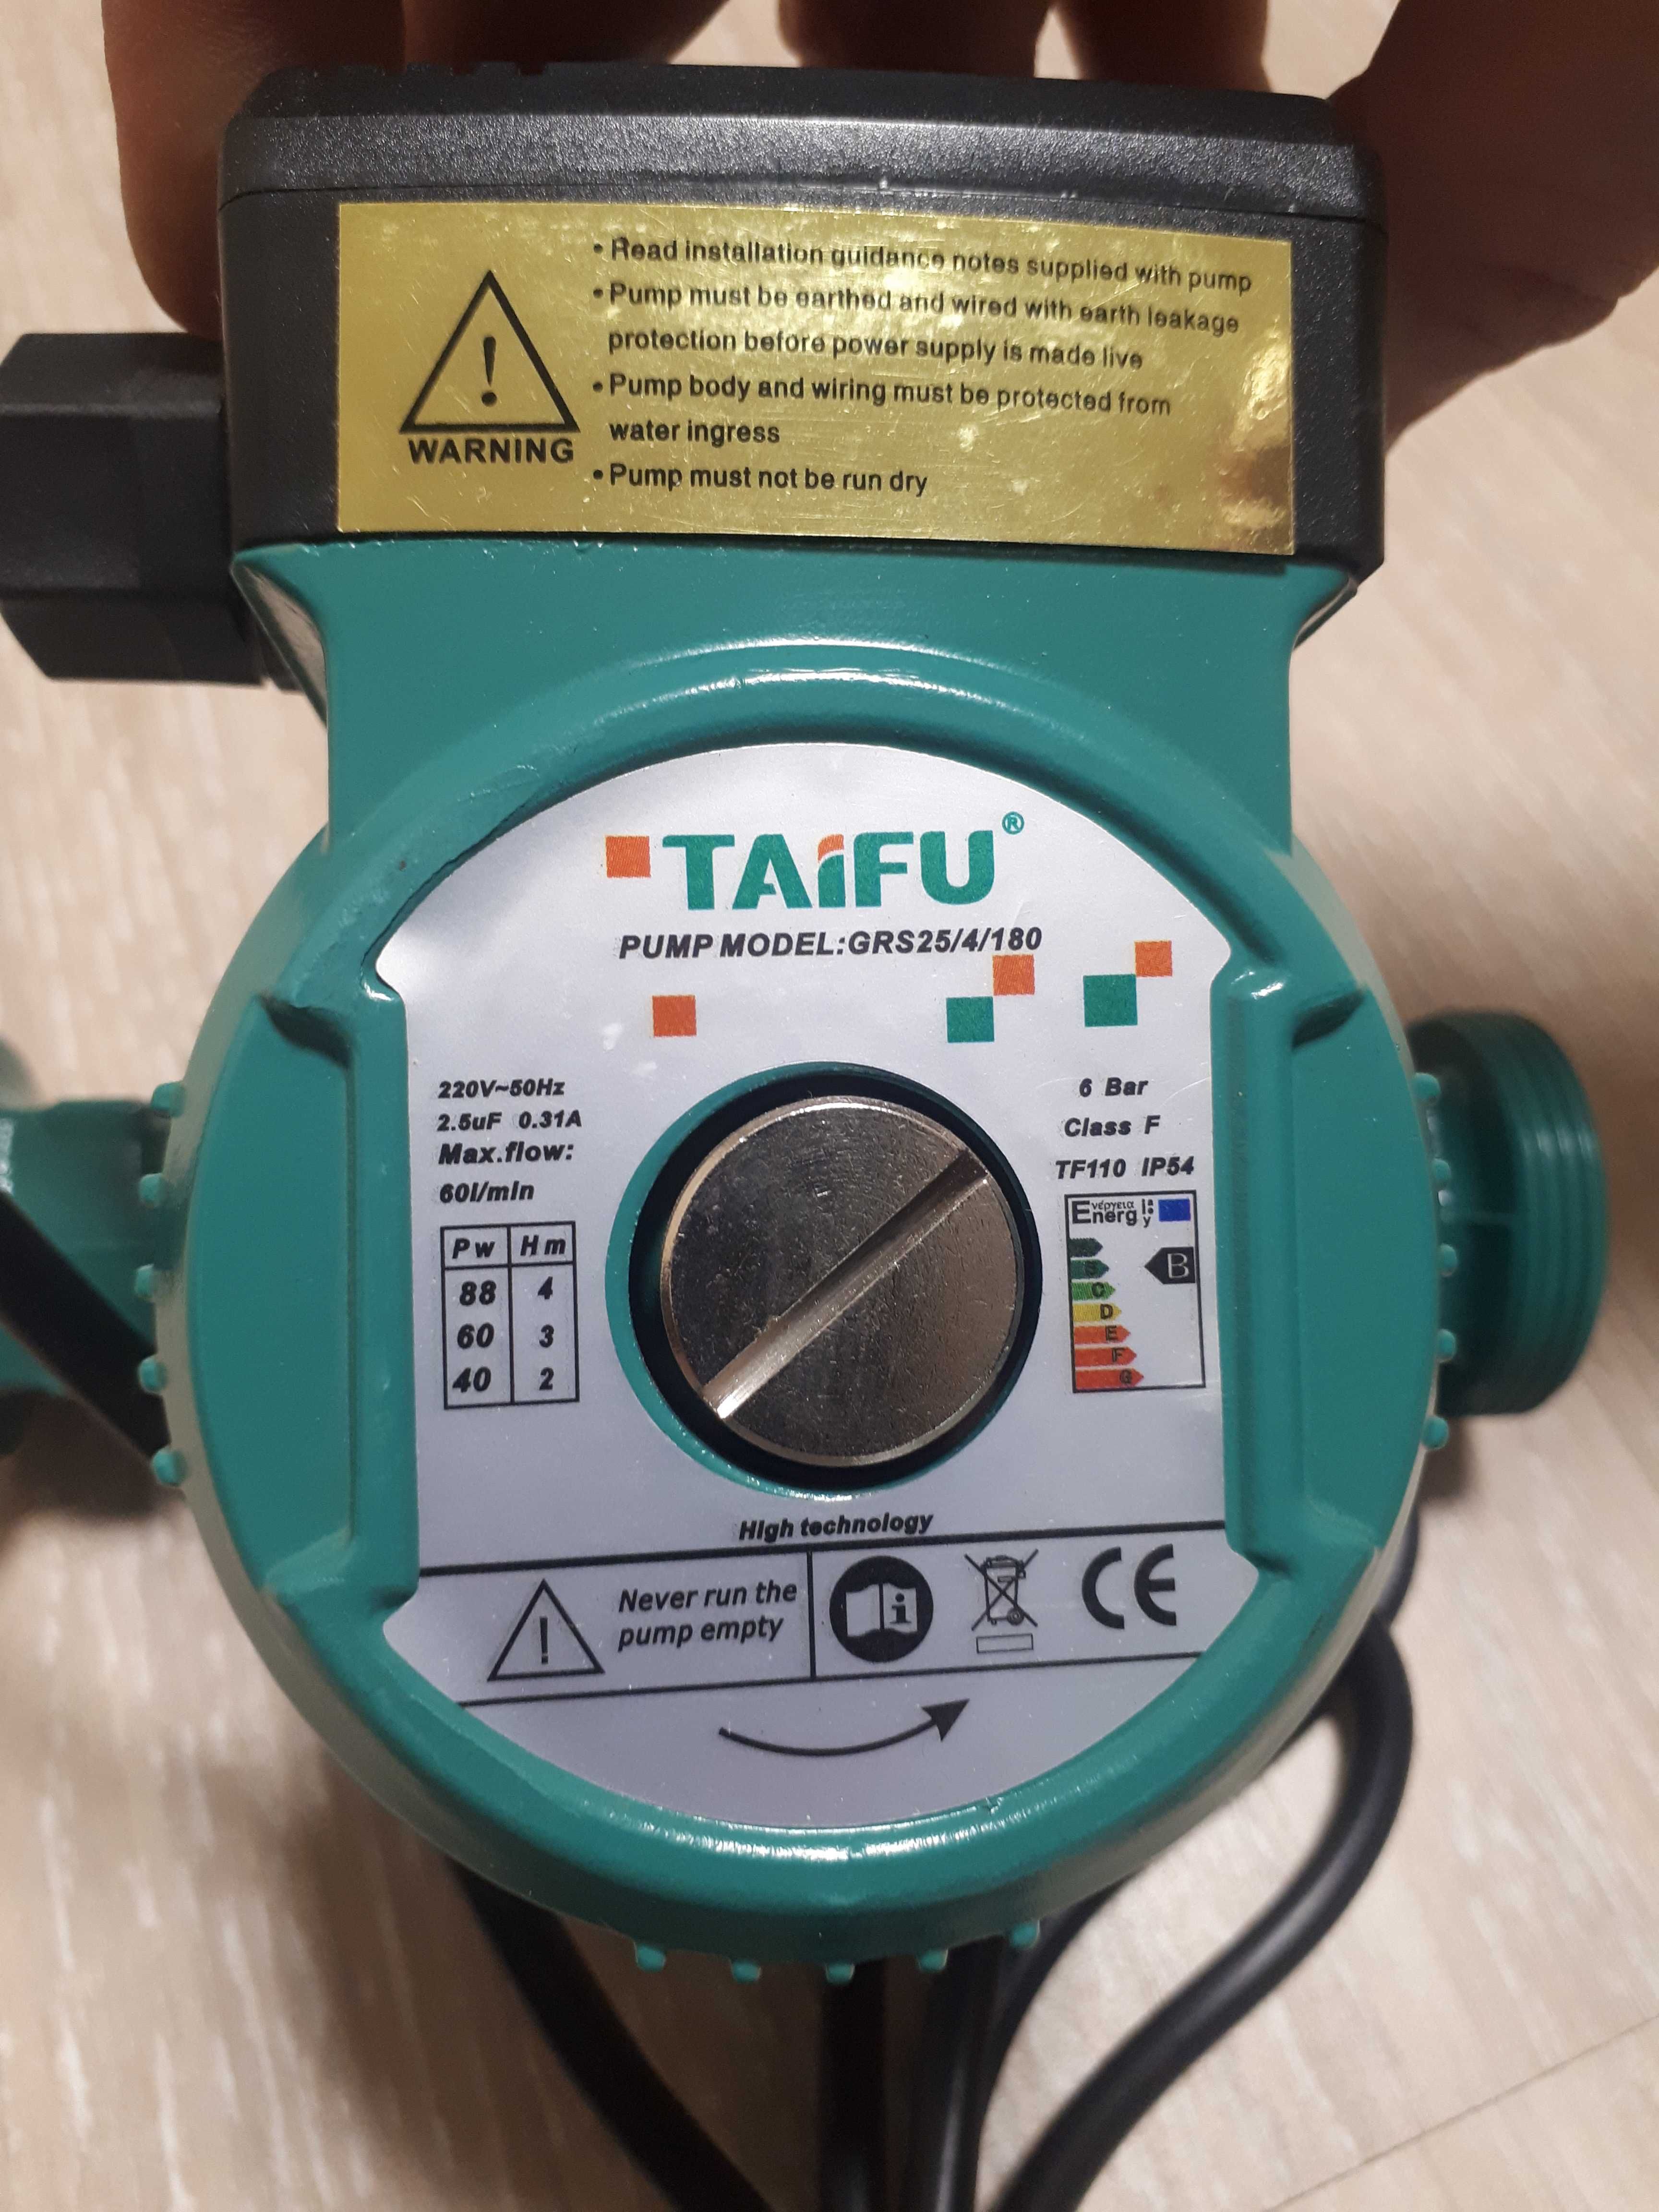 Циркуляционный насос TAIFU GRS 25/4/180 для систем отопления и гайки.